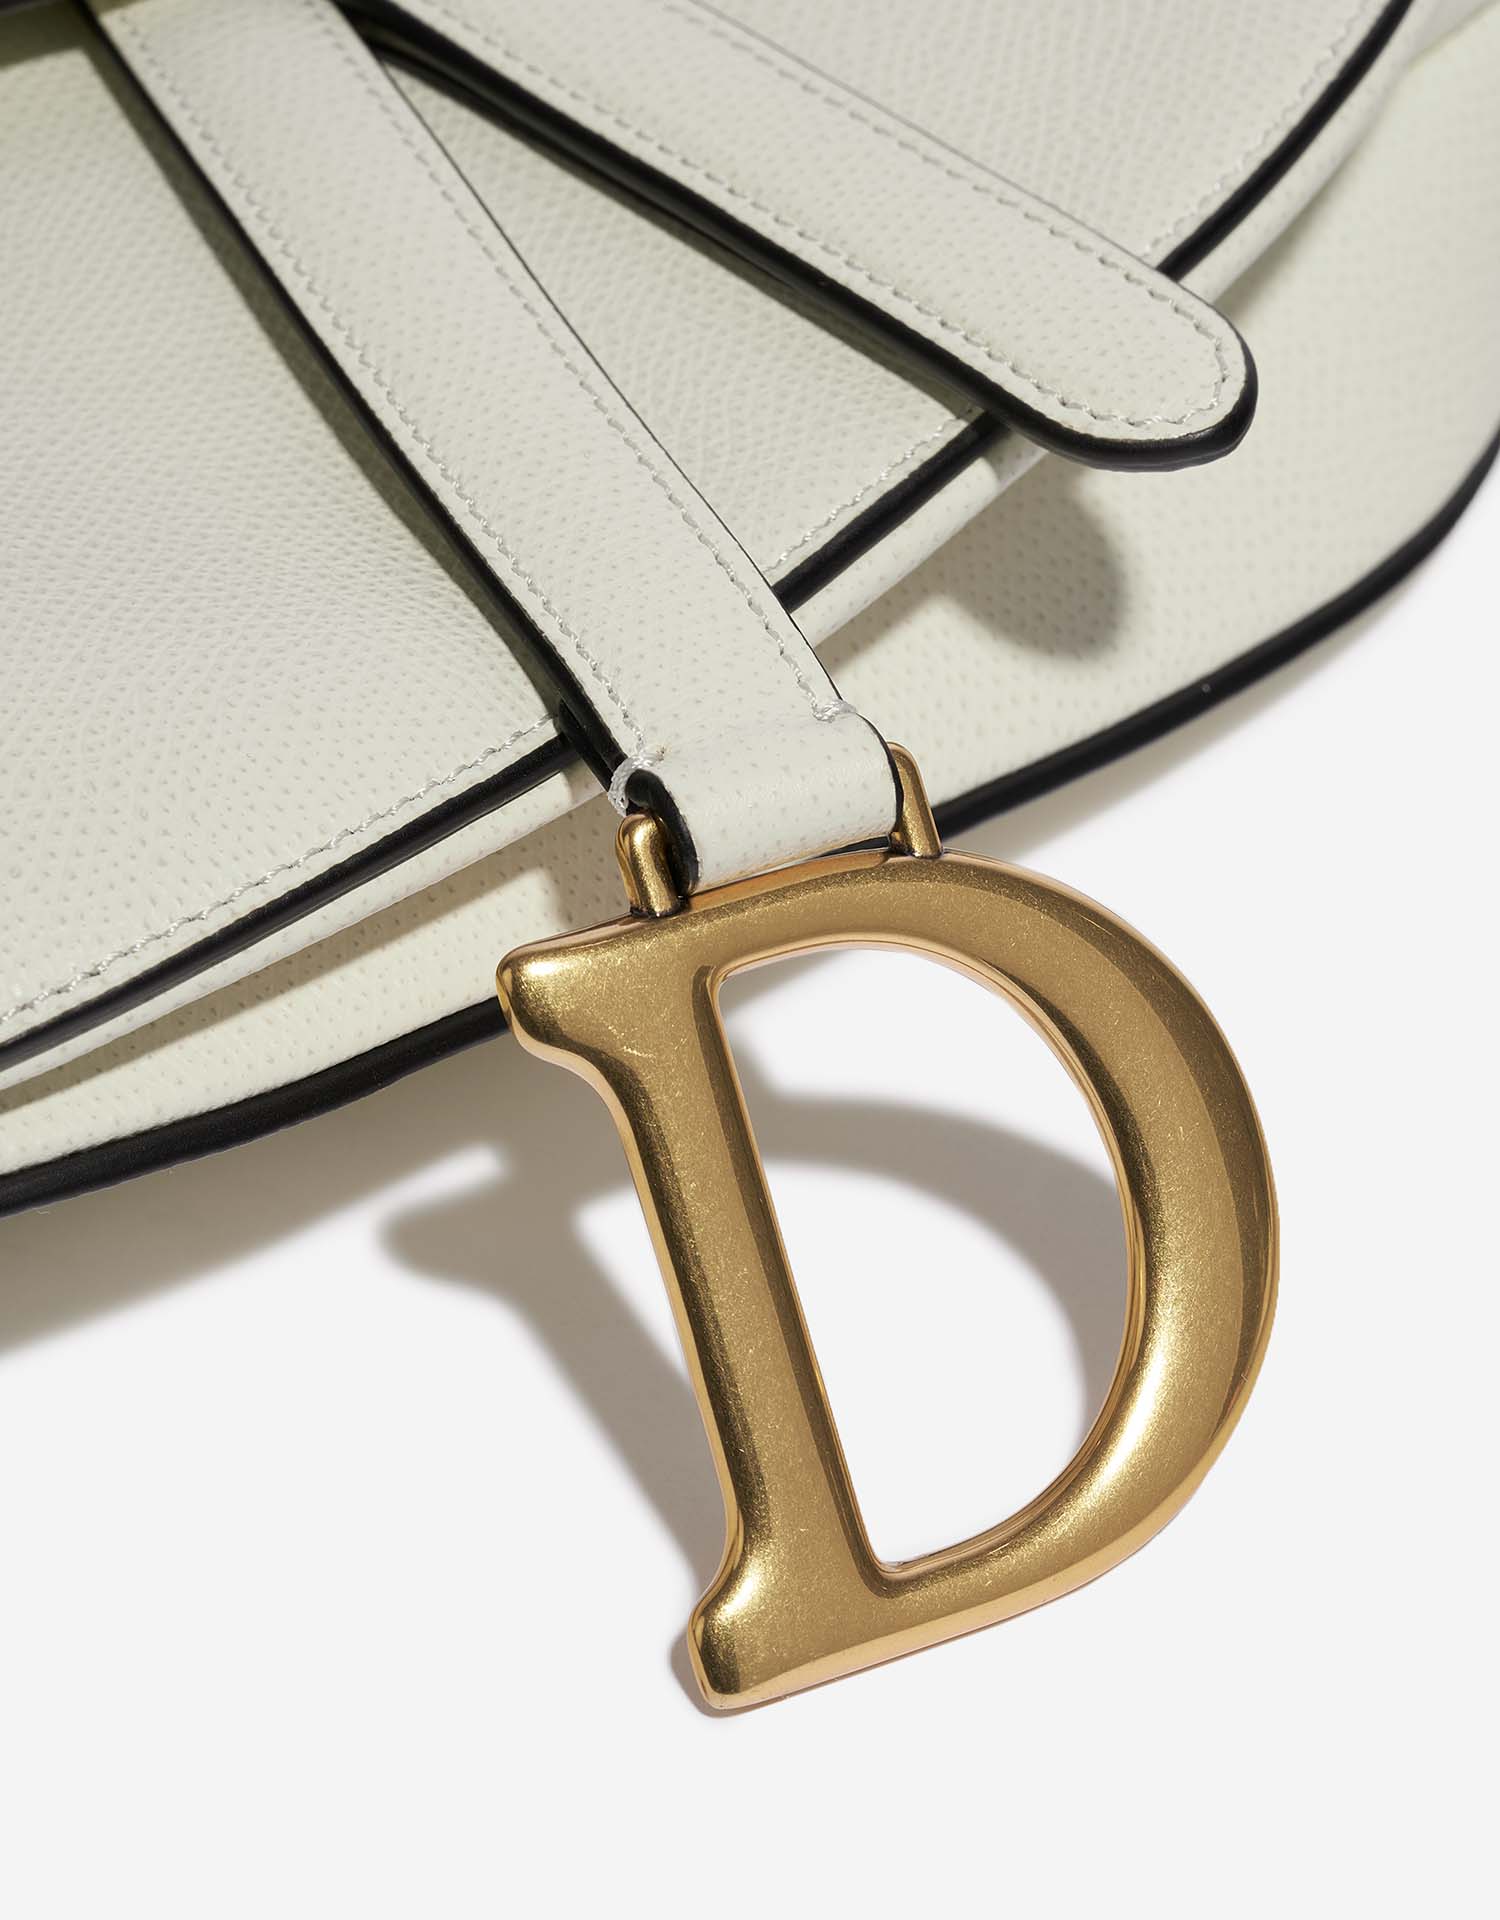 Dior Saddle Medium Cream Verschluss-System | Verkaufen Sie Ihre Designer-Tasche auf Saclab.com